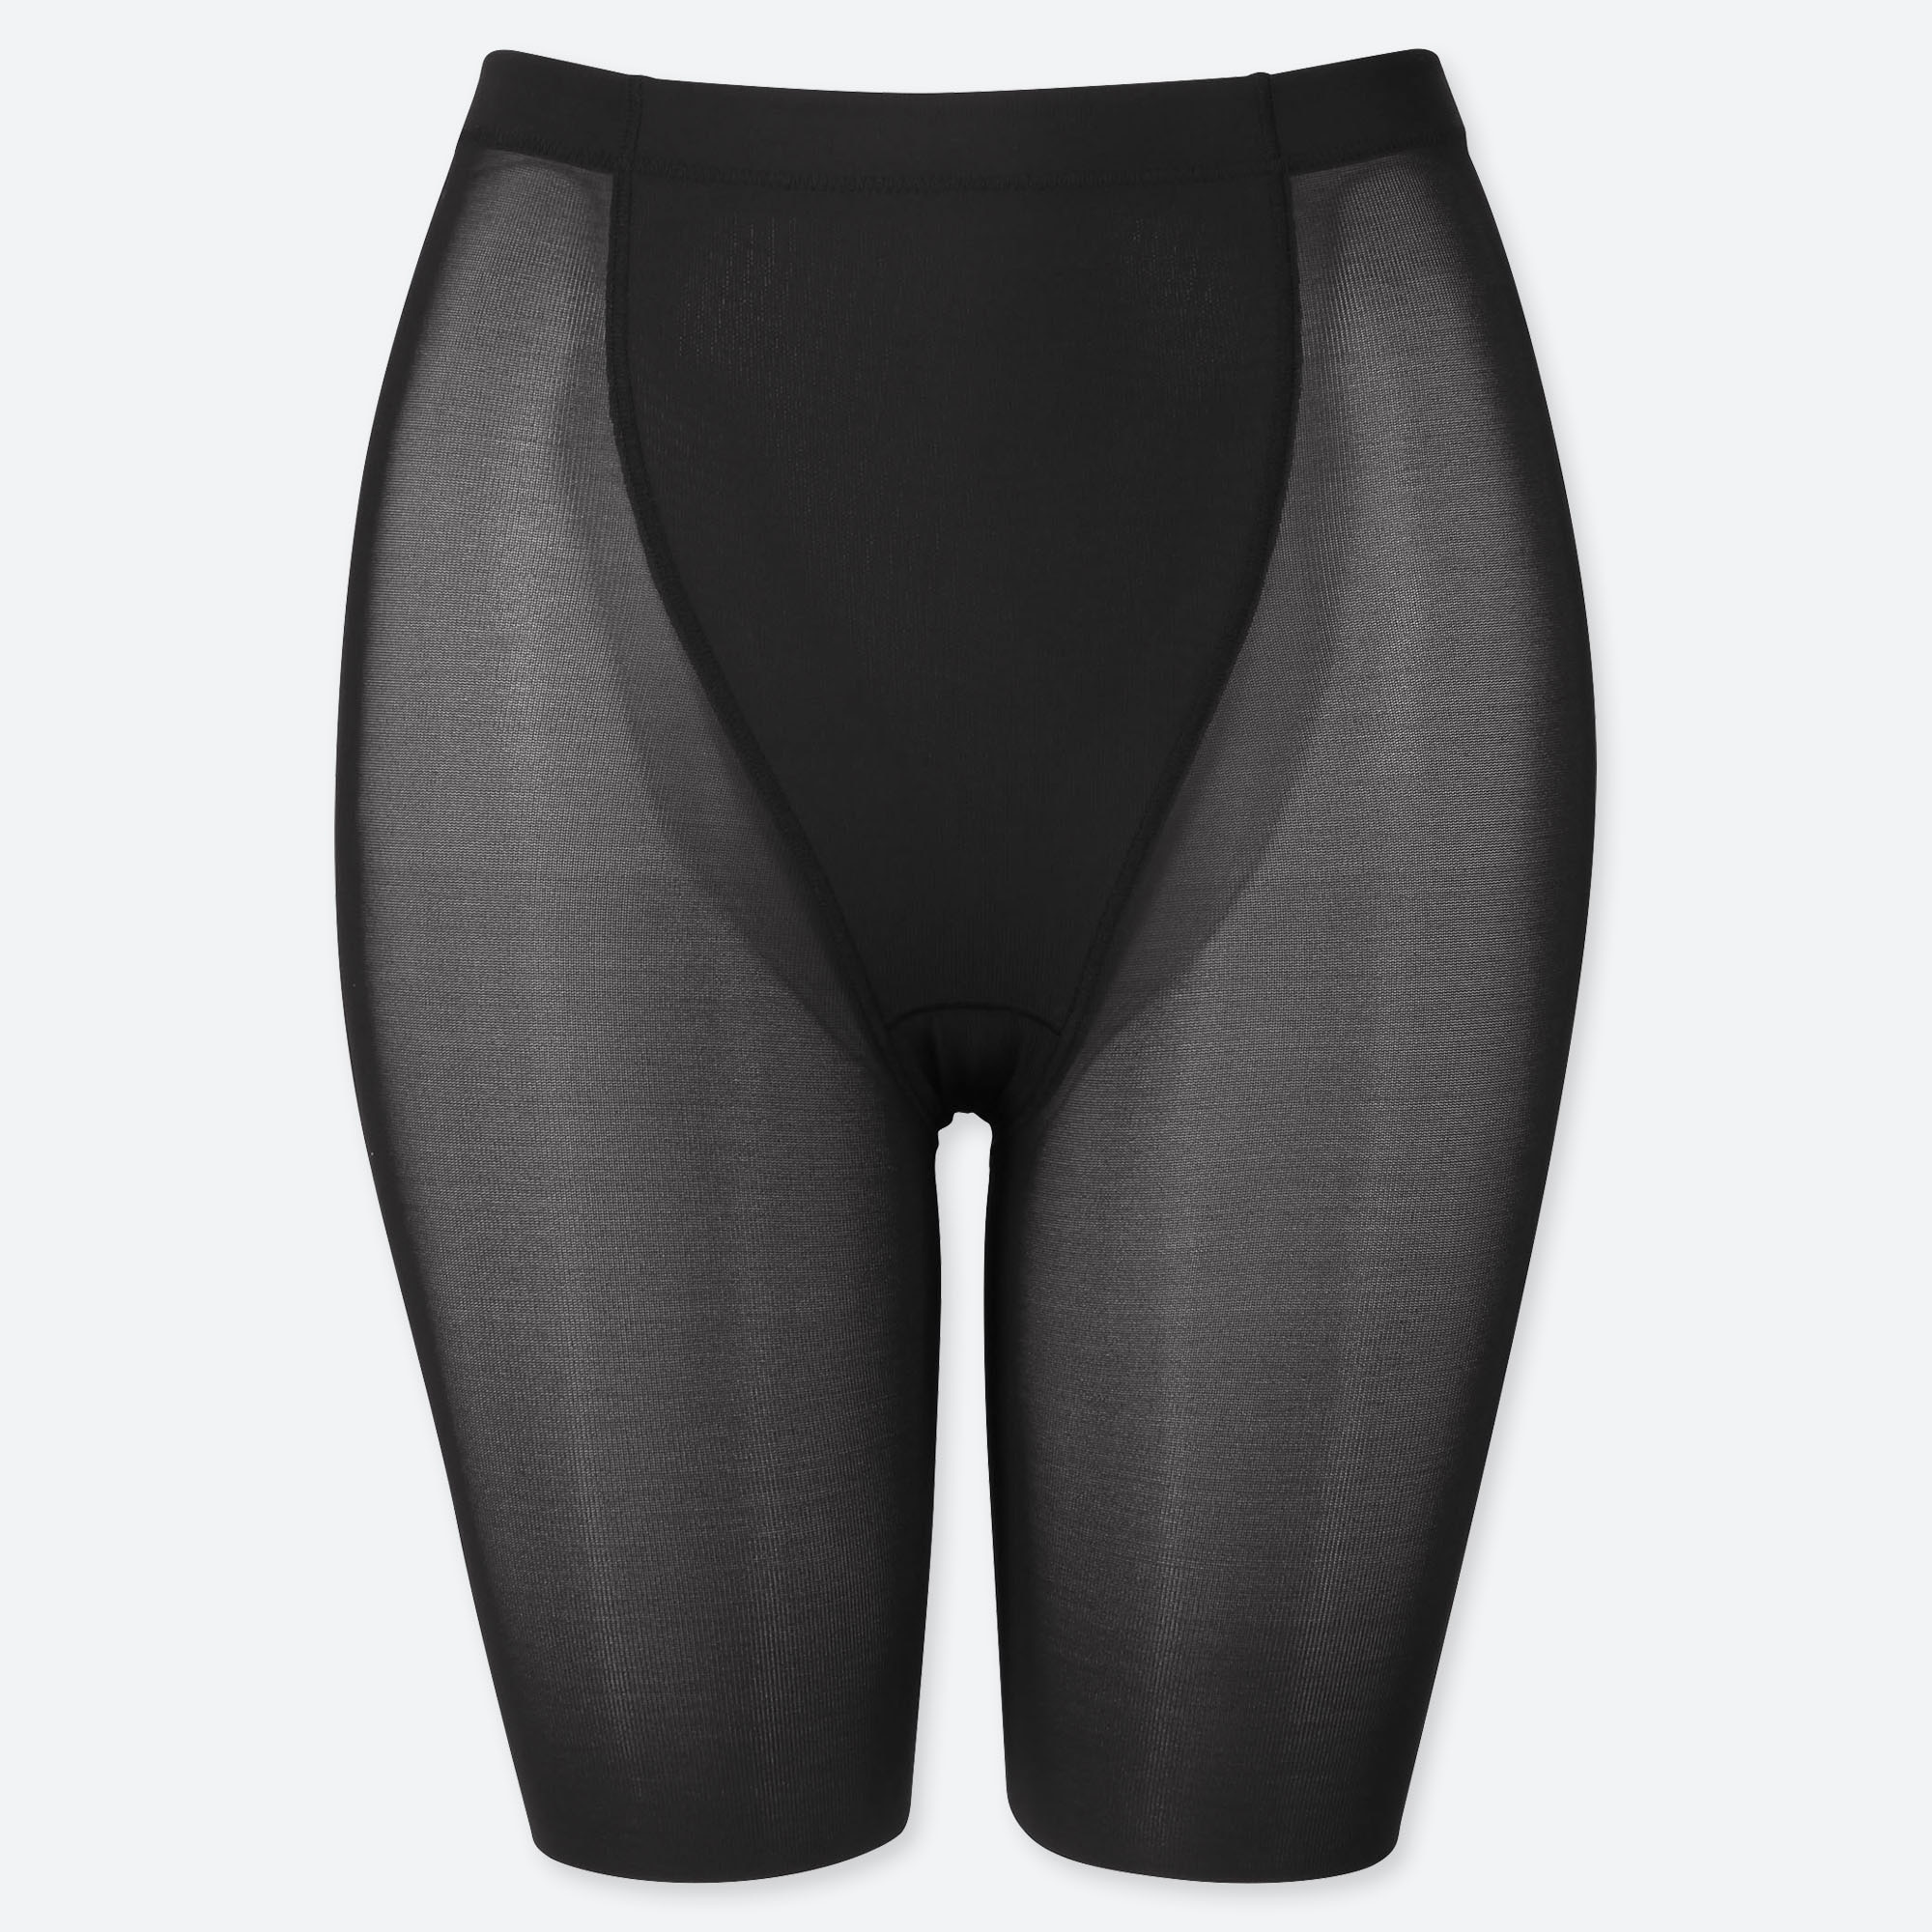 Uniqlo Find In Store Body Silhouette Shaper Non Lined Half Shorts Support